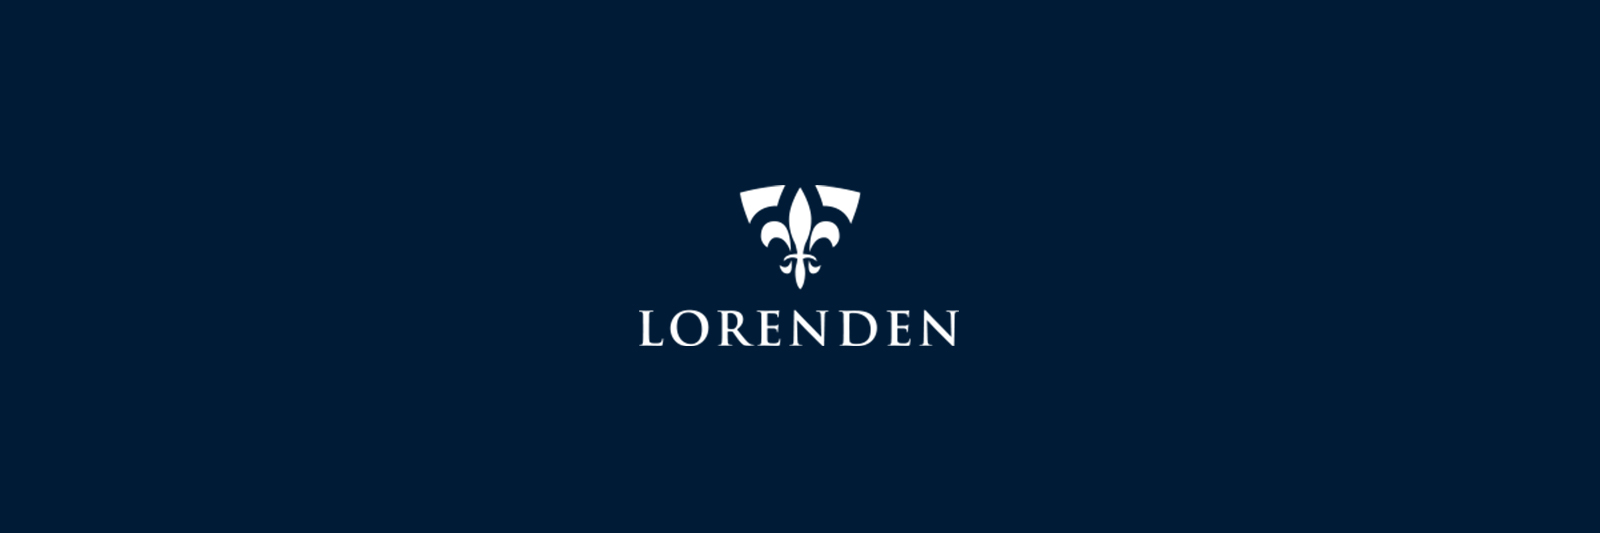 Lorenden logo